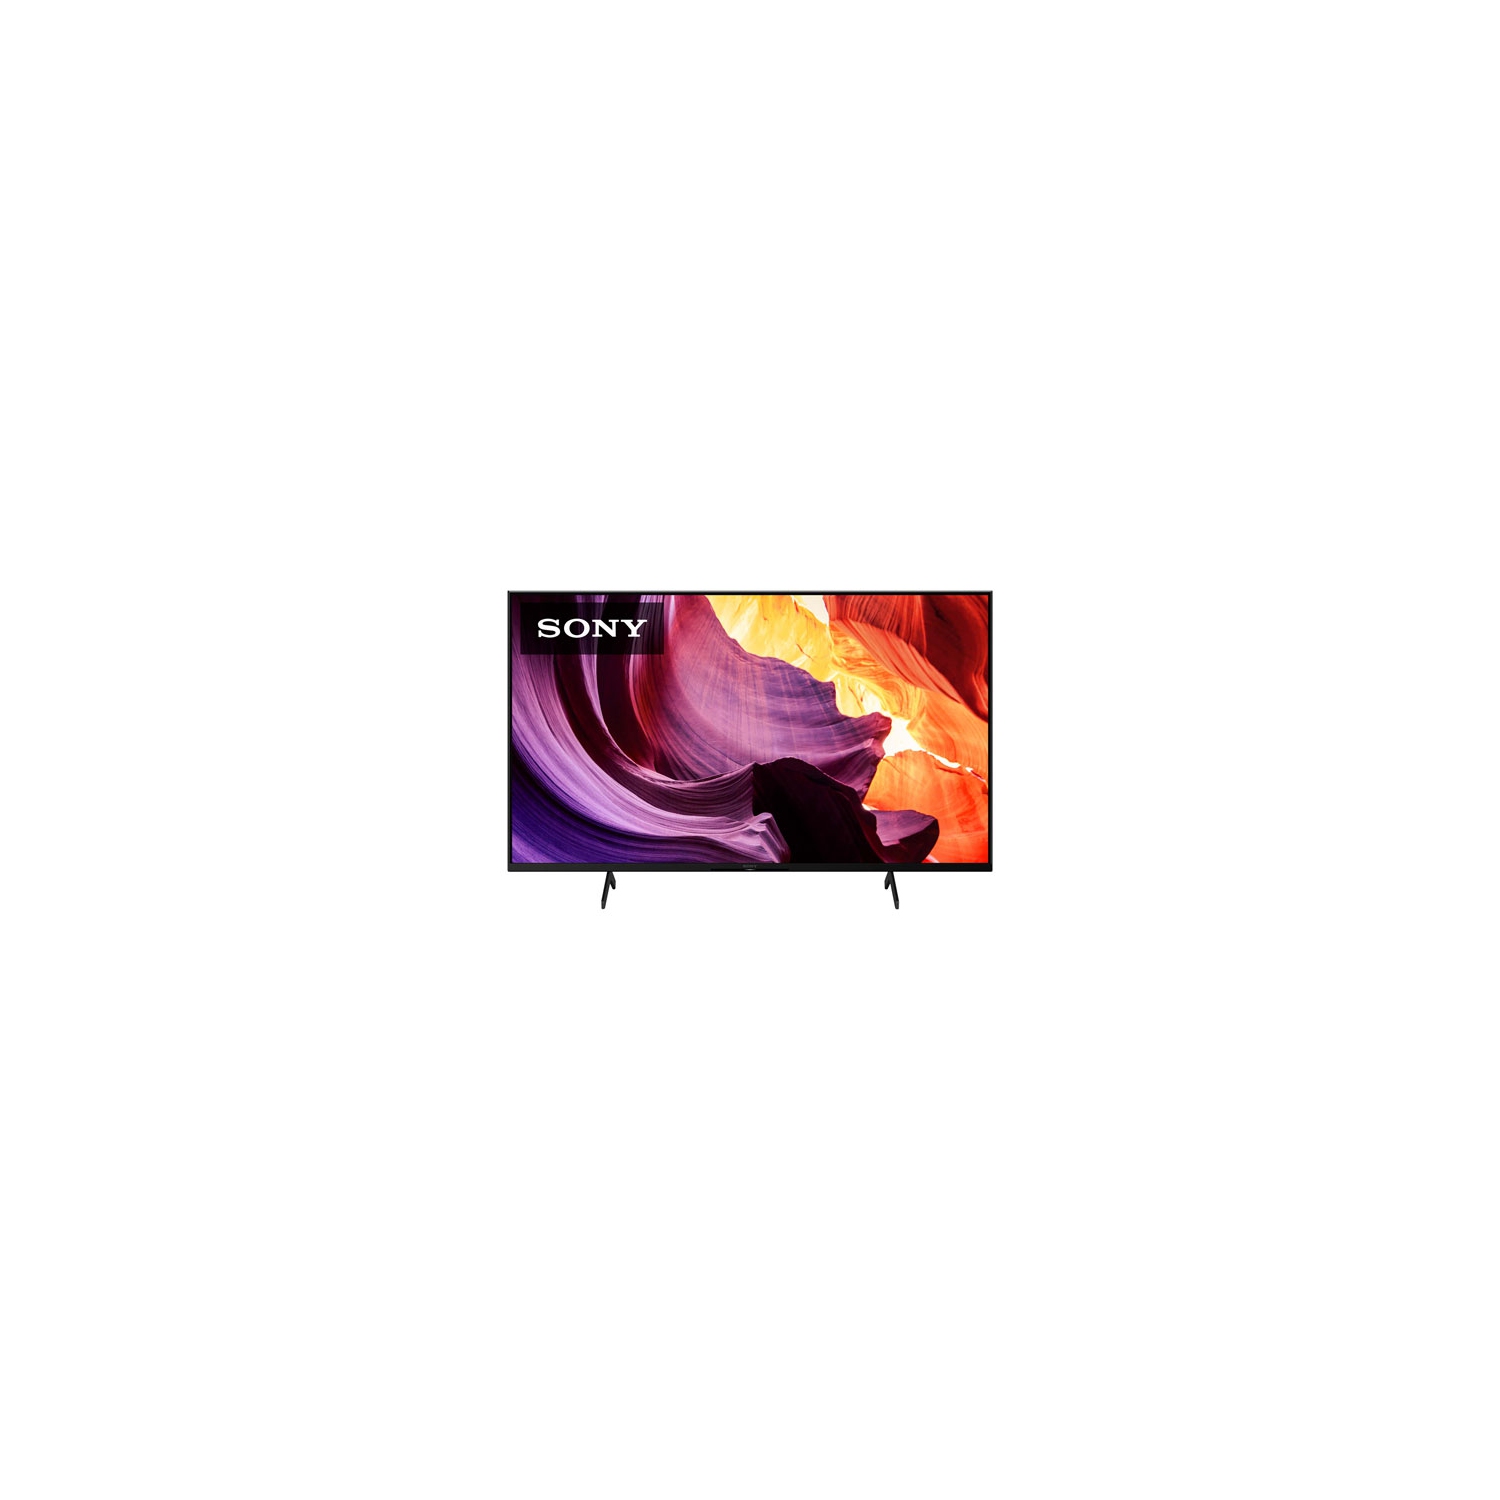 Refurbished (Excellent) - Sony X80K 43" 4K UHD HDR LED Smart Google TV (KD43X80K) - 2022